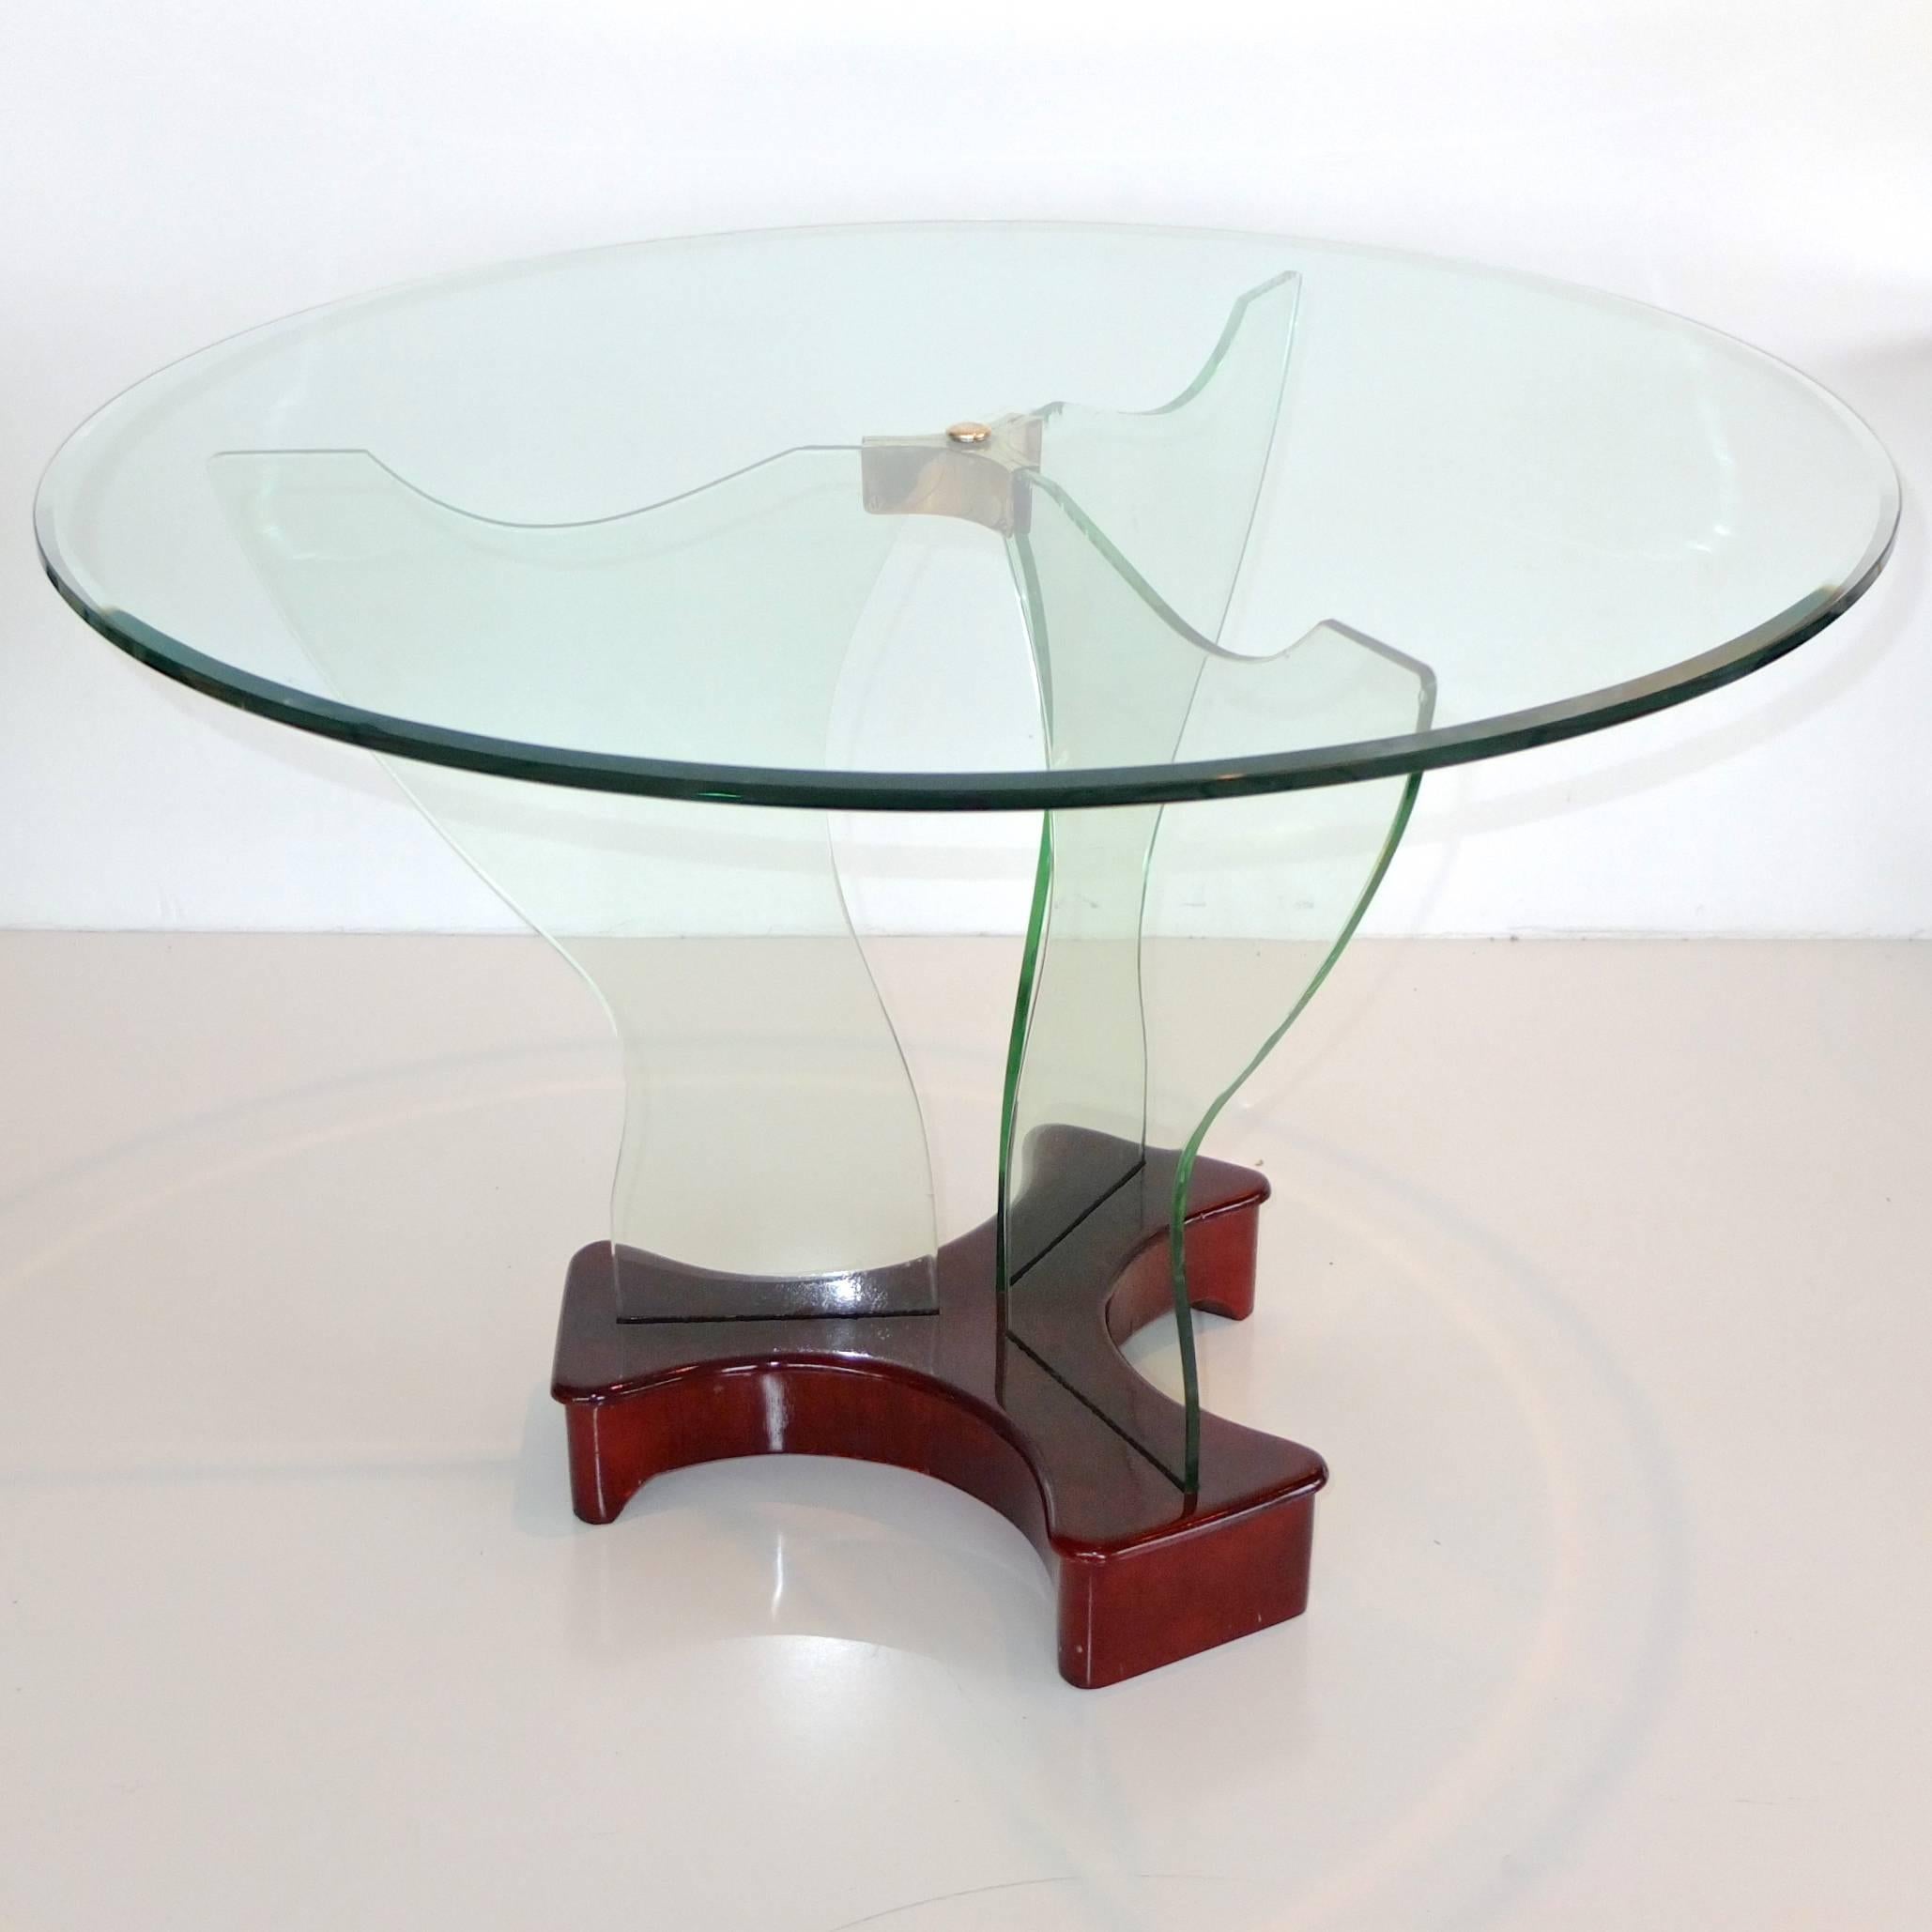 Table de cocktail Art Déco italien des années 1930 par Luigi Brusotti, Milano avec un plateau en verre biseauté rond fixé par une monture en laiton à trois panneaux de supports en verre securit façonné montés sur une base en forme de trèfle en